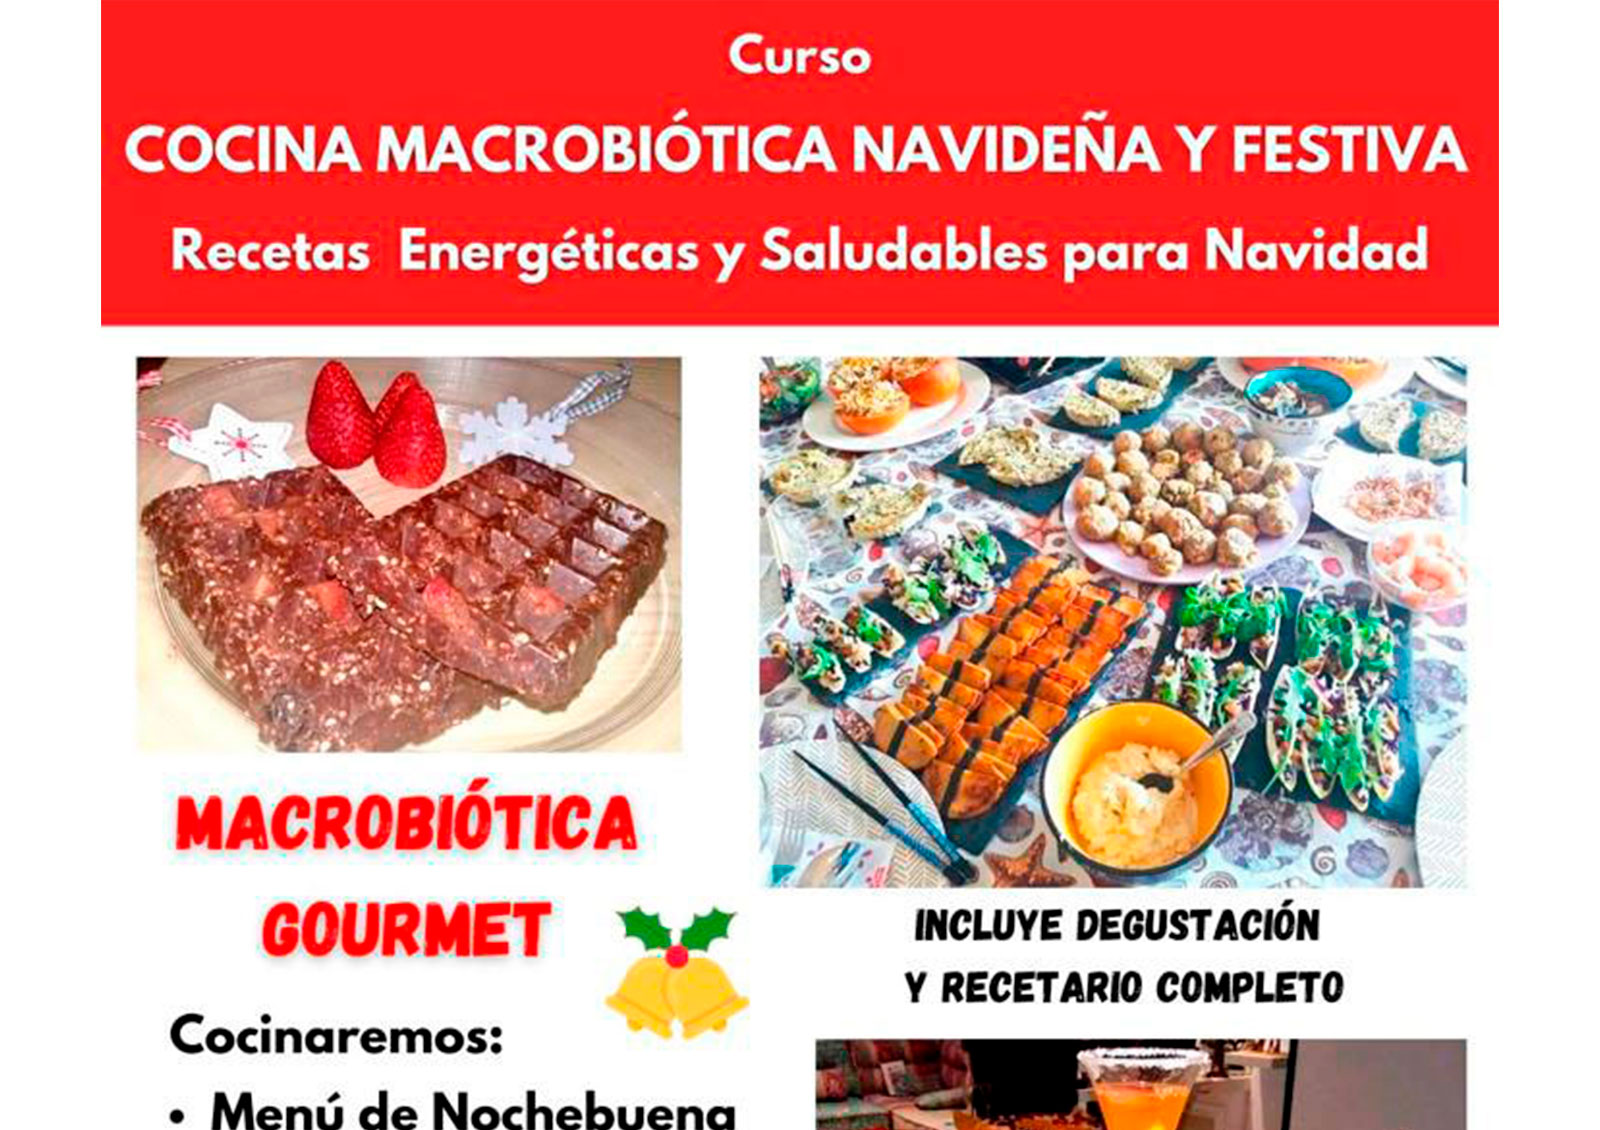 Cocina Macrobiótica Navideña y Festiva. Recetas Energéticas y Saludable para Navidad